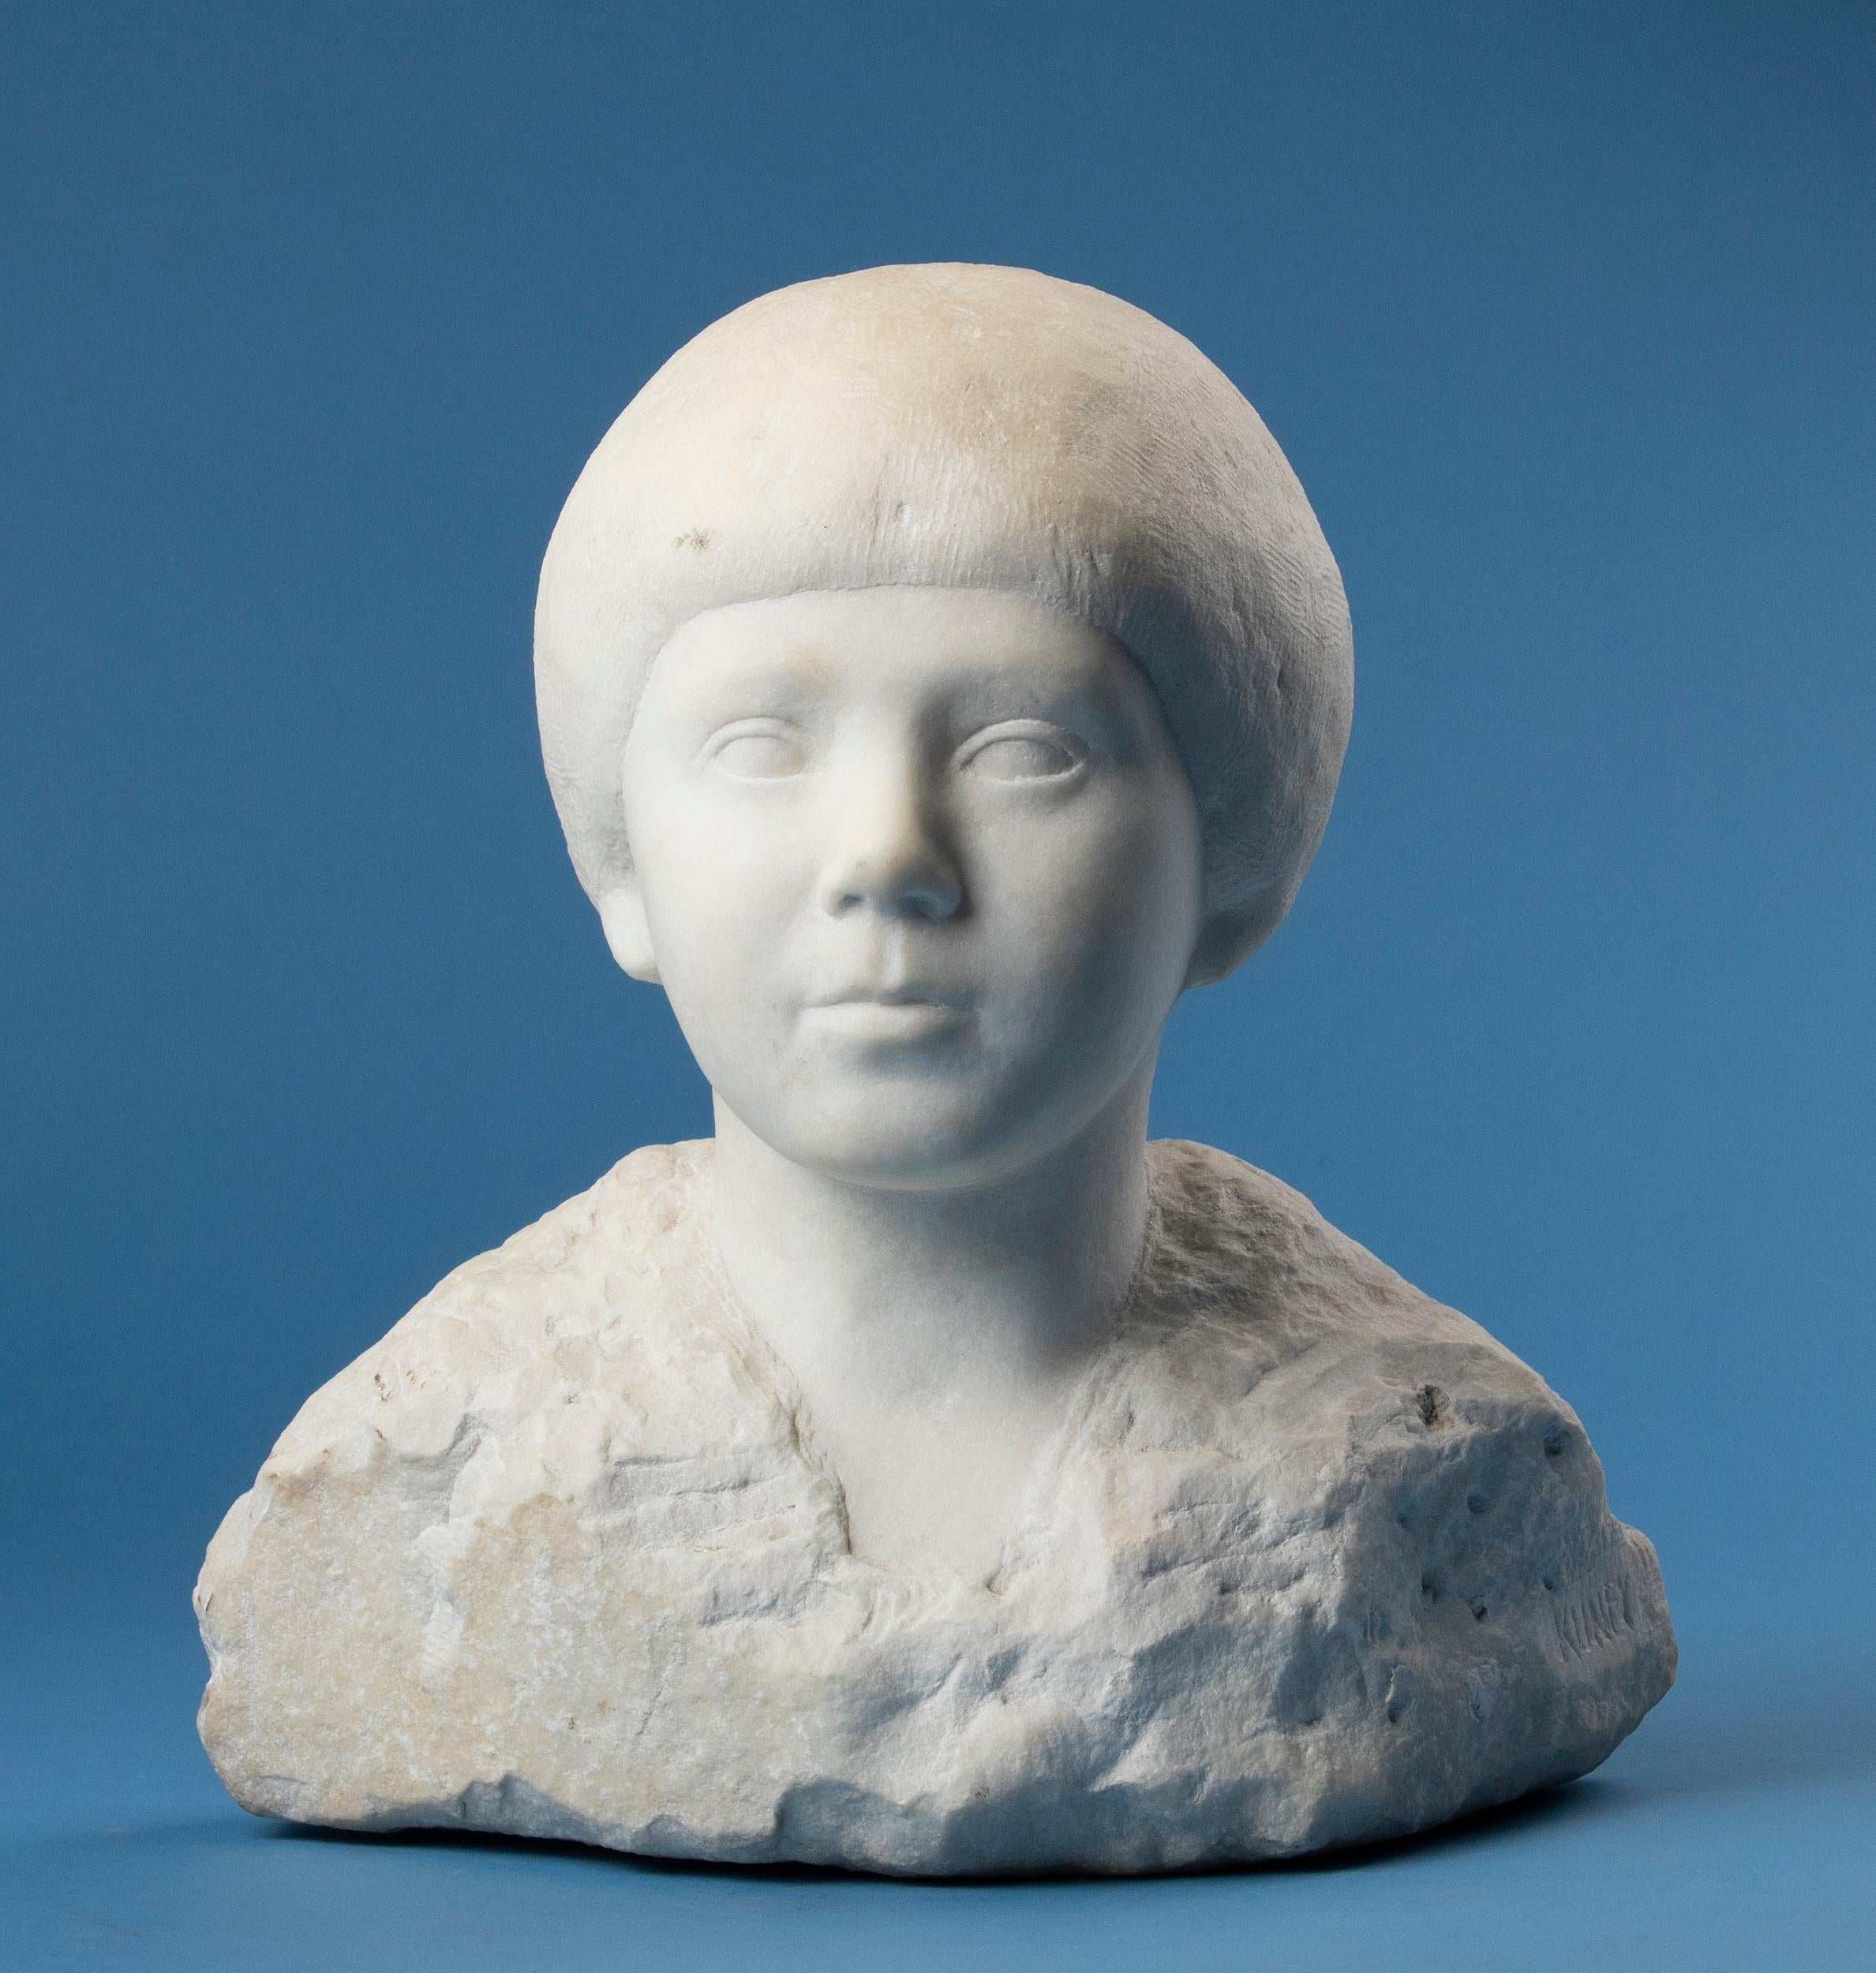 Schöne Marmorbüste eines kleinen Kindes.
Diese Statue ist aus Carrara-Marmor handgeschnitten.
Diese Statue stammt aus der Zeit um 1930, aus der modernistischen Art Déco-Periode. Das schöne, glatte Gesicht des Kindes steht in schönem Kontrast zu